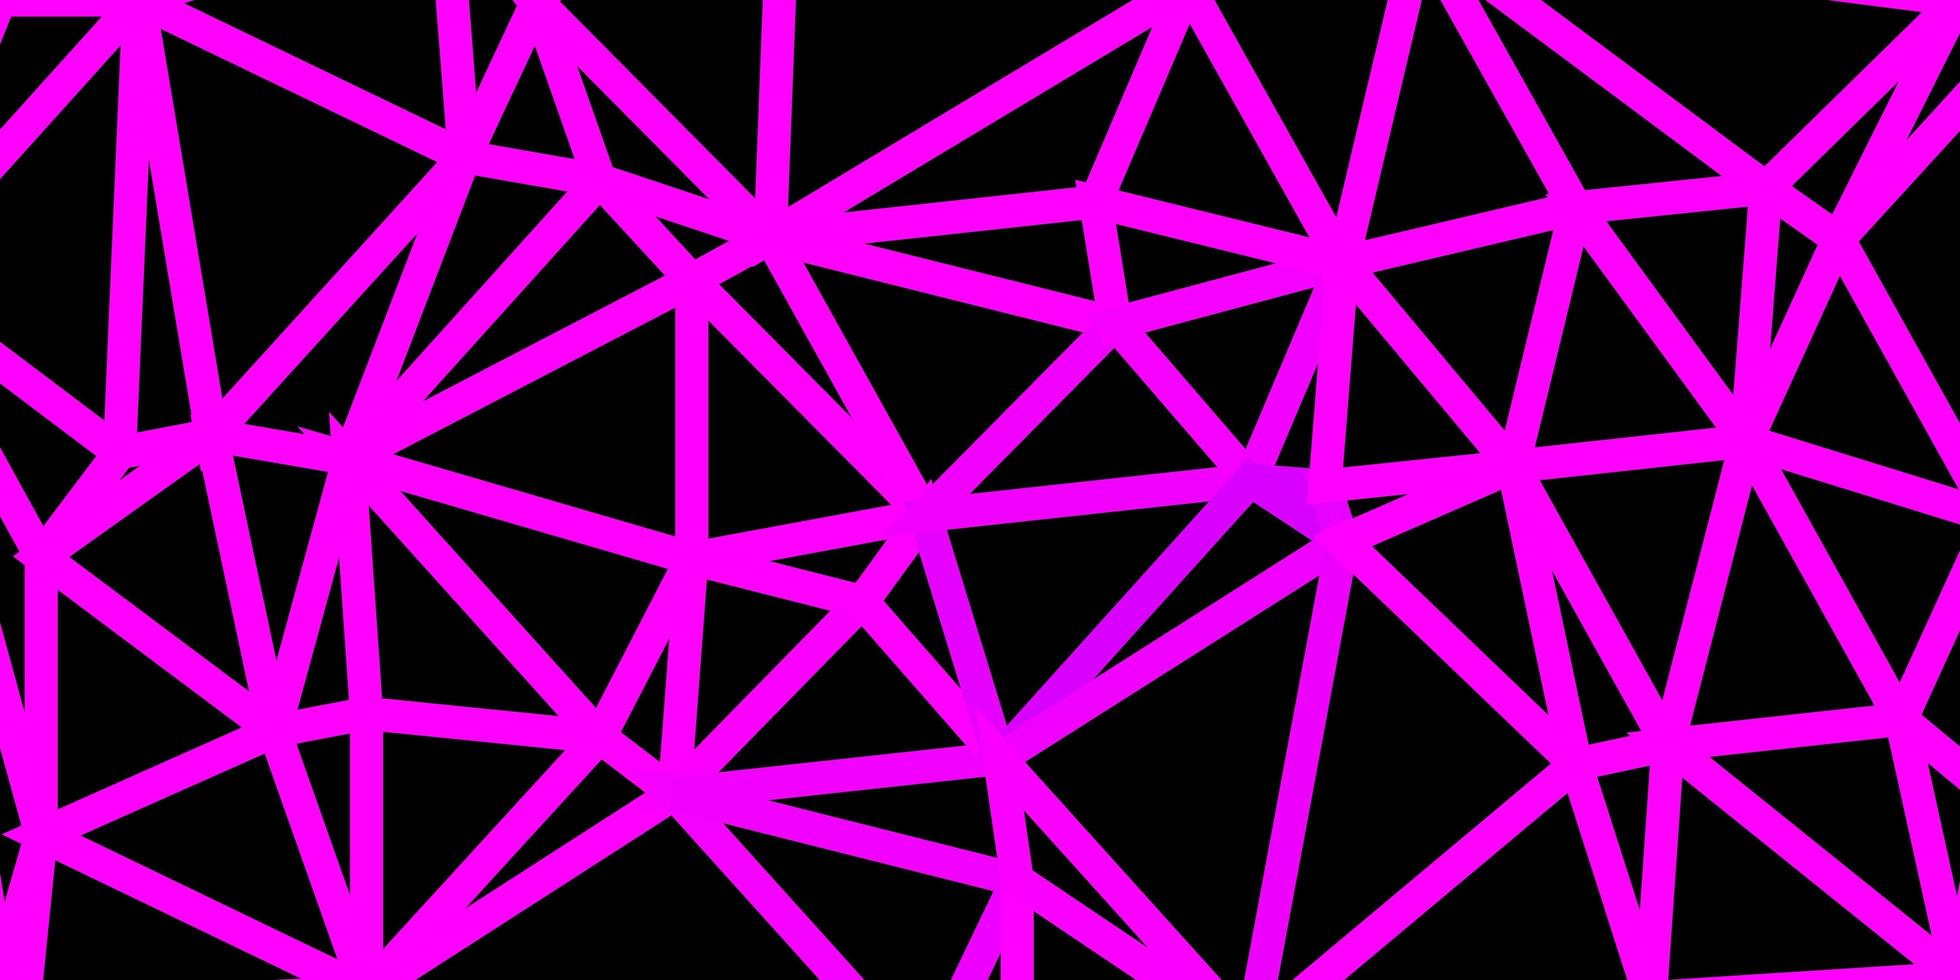 pano de fundo poligonal de vetor rosa claro